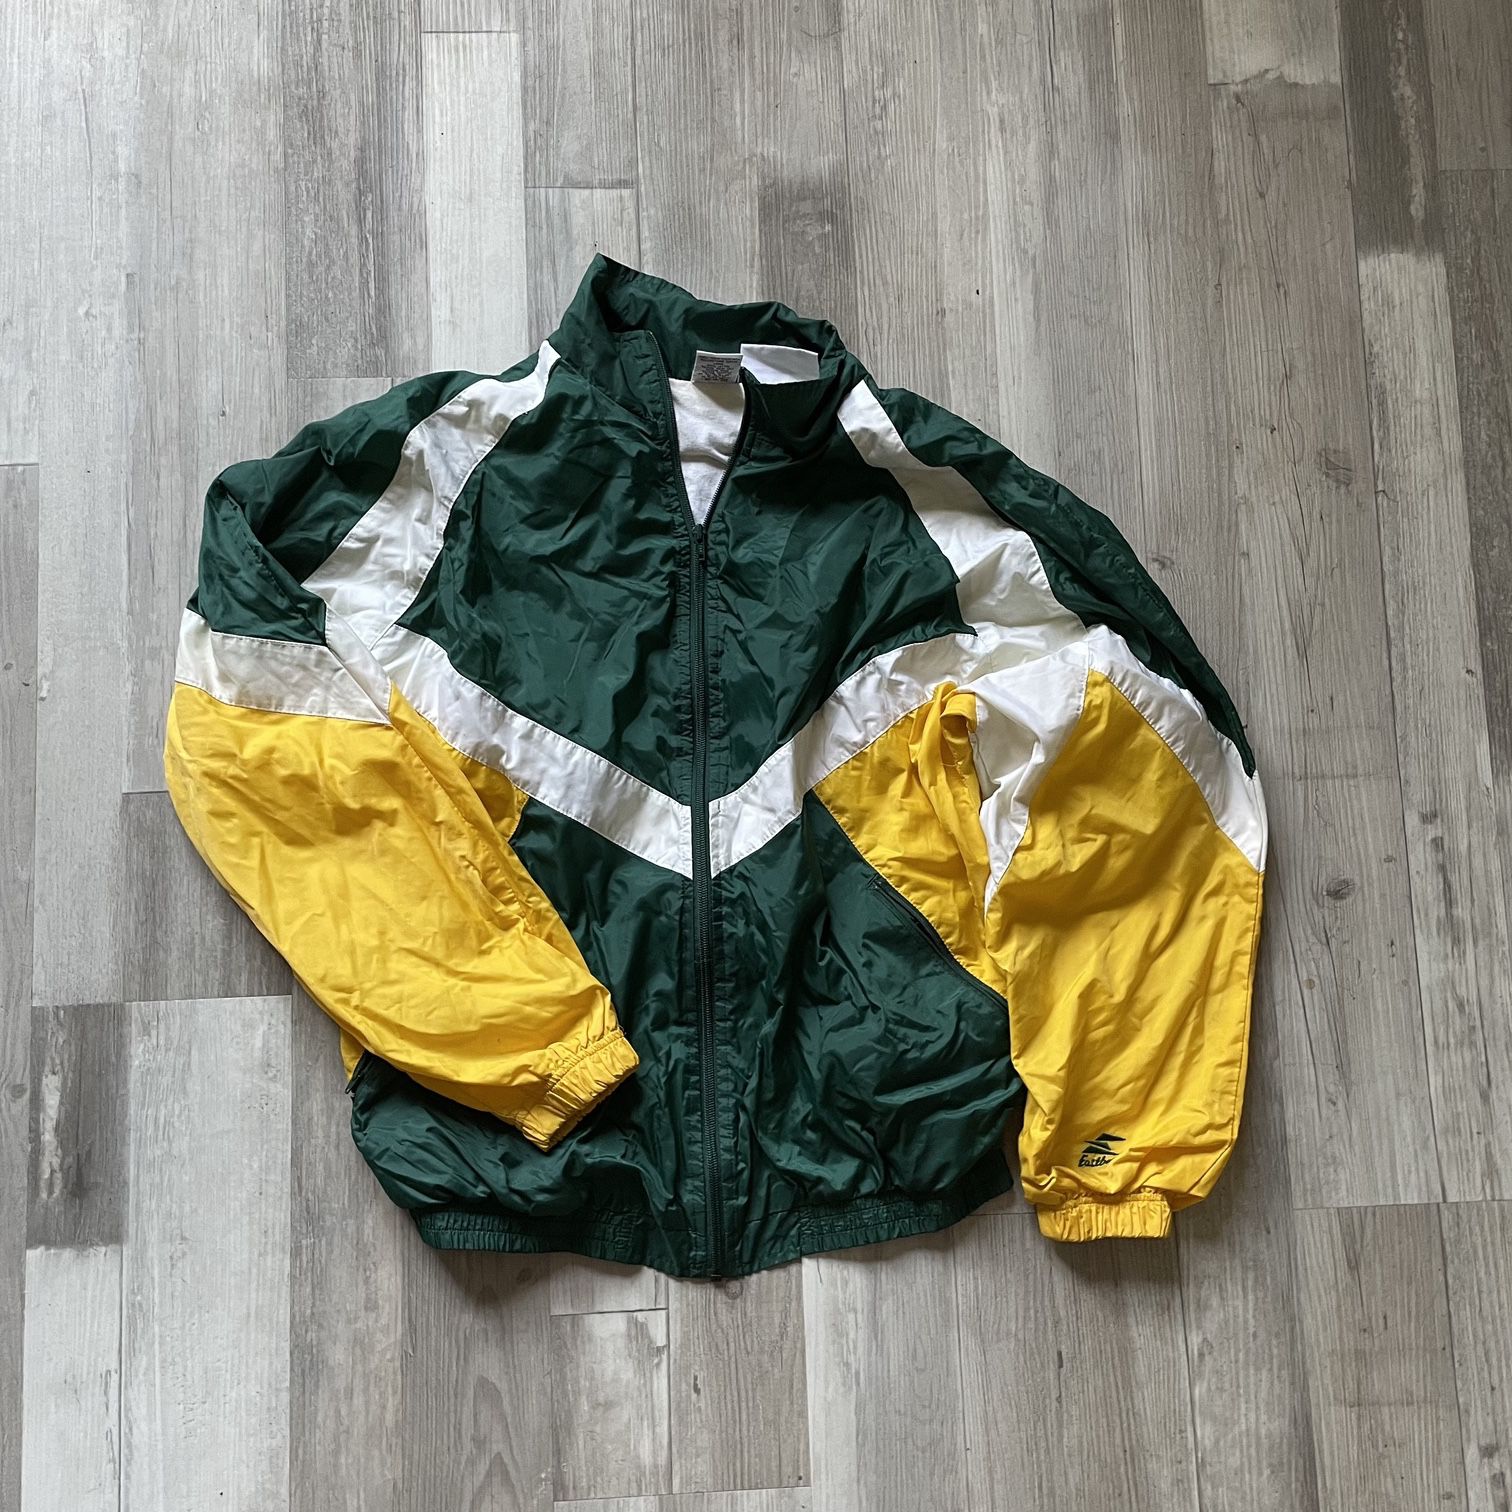 Nba nike SB jacket for Sale in Philadelphia, PA - OfferUp